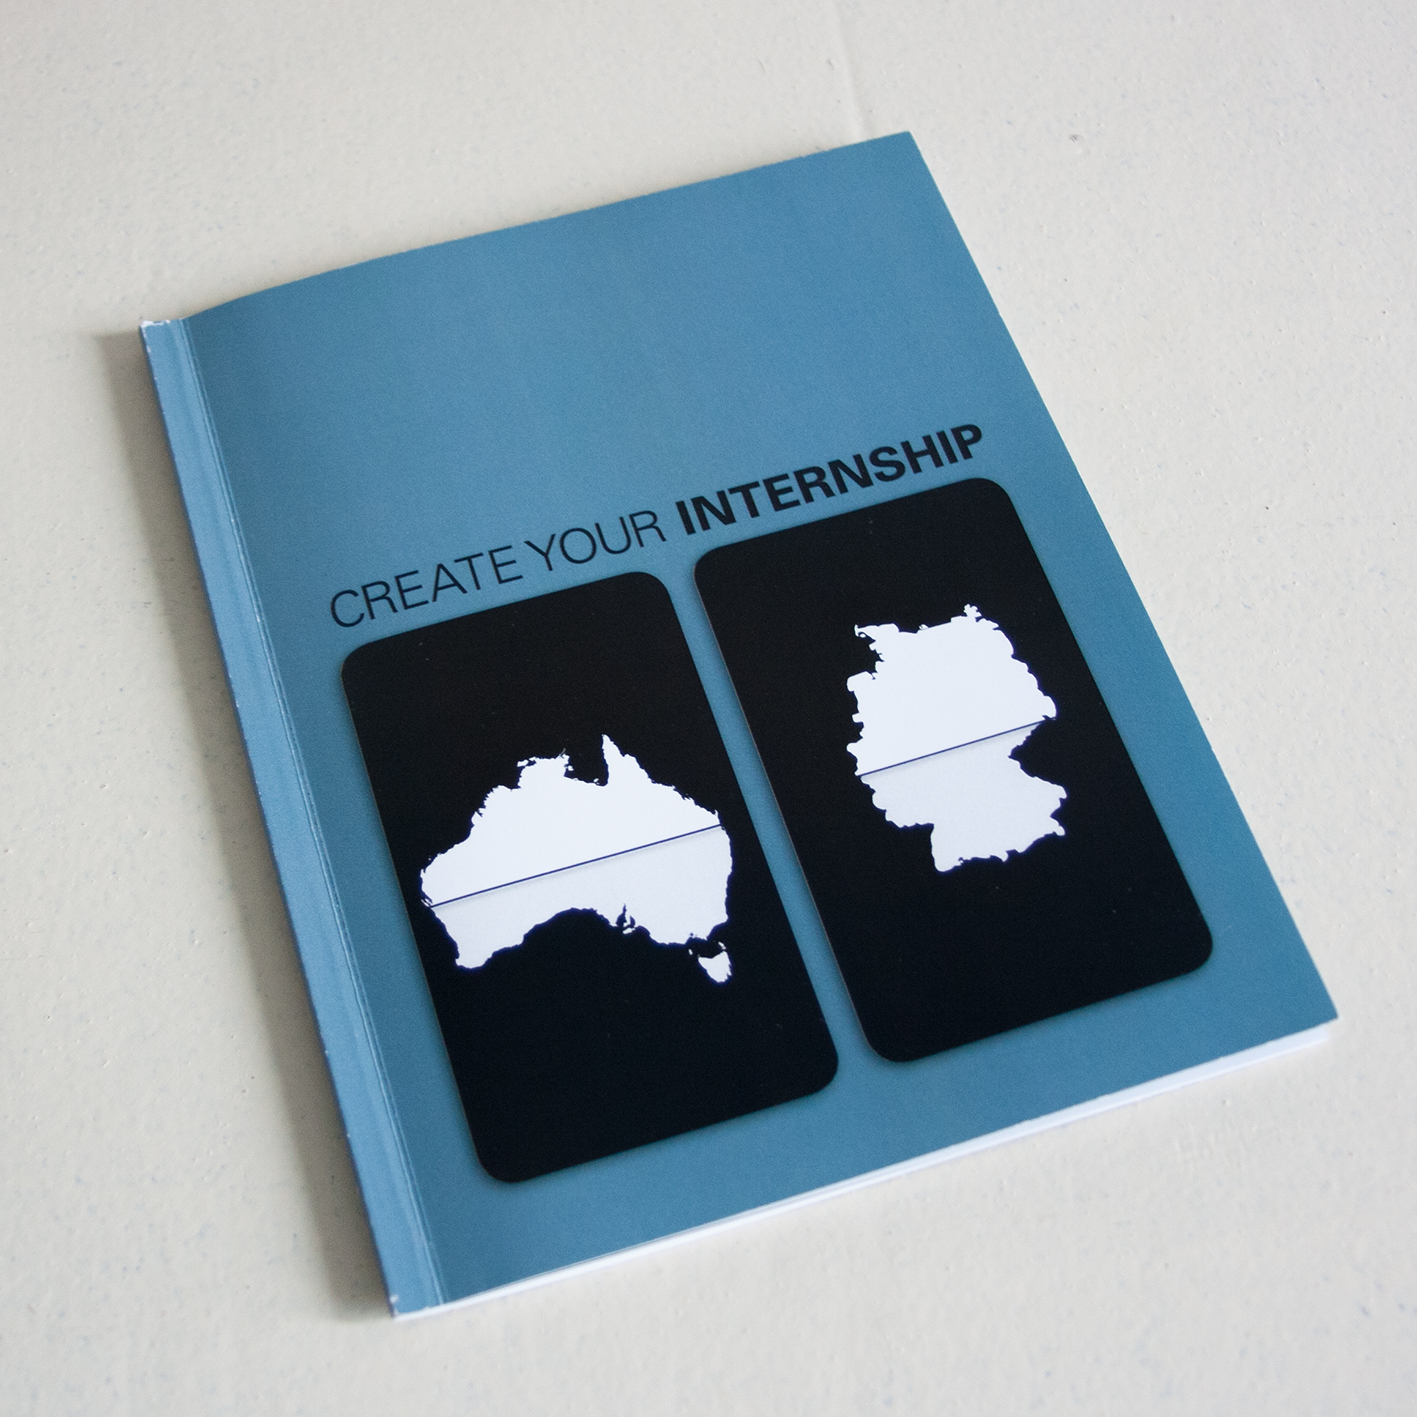 Praktikumsbericht;create your internship